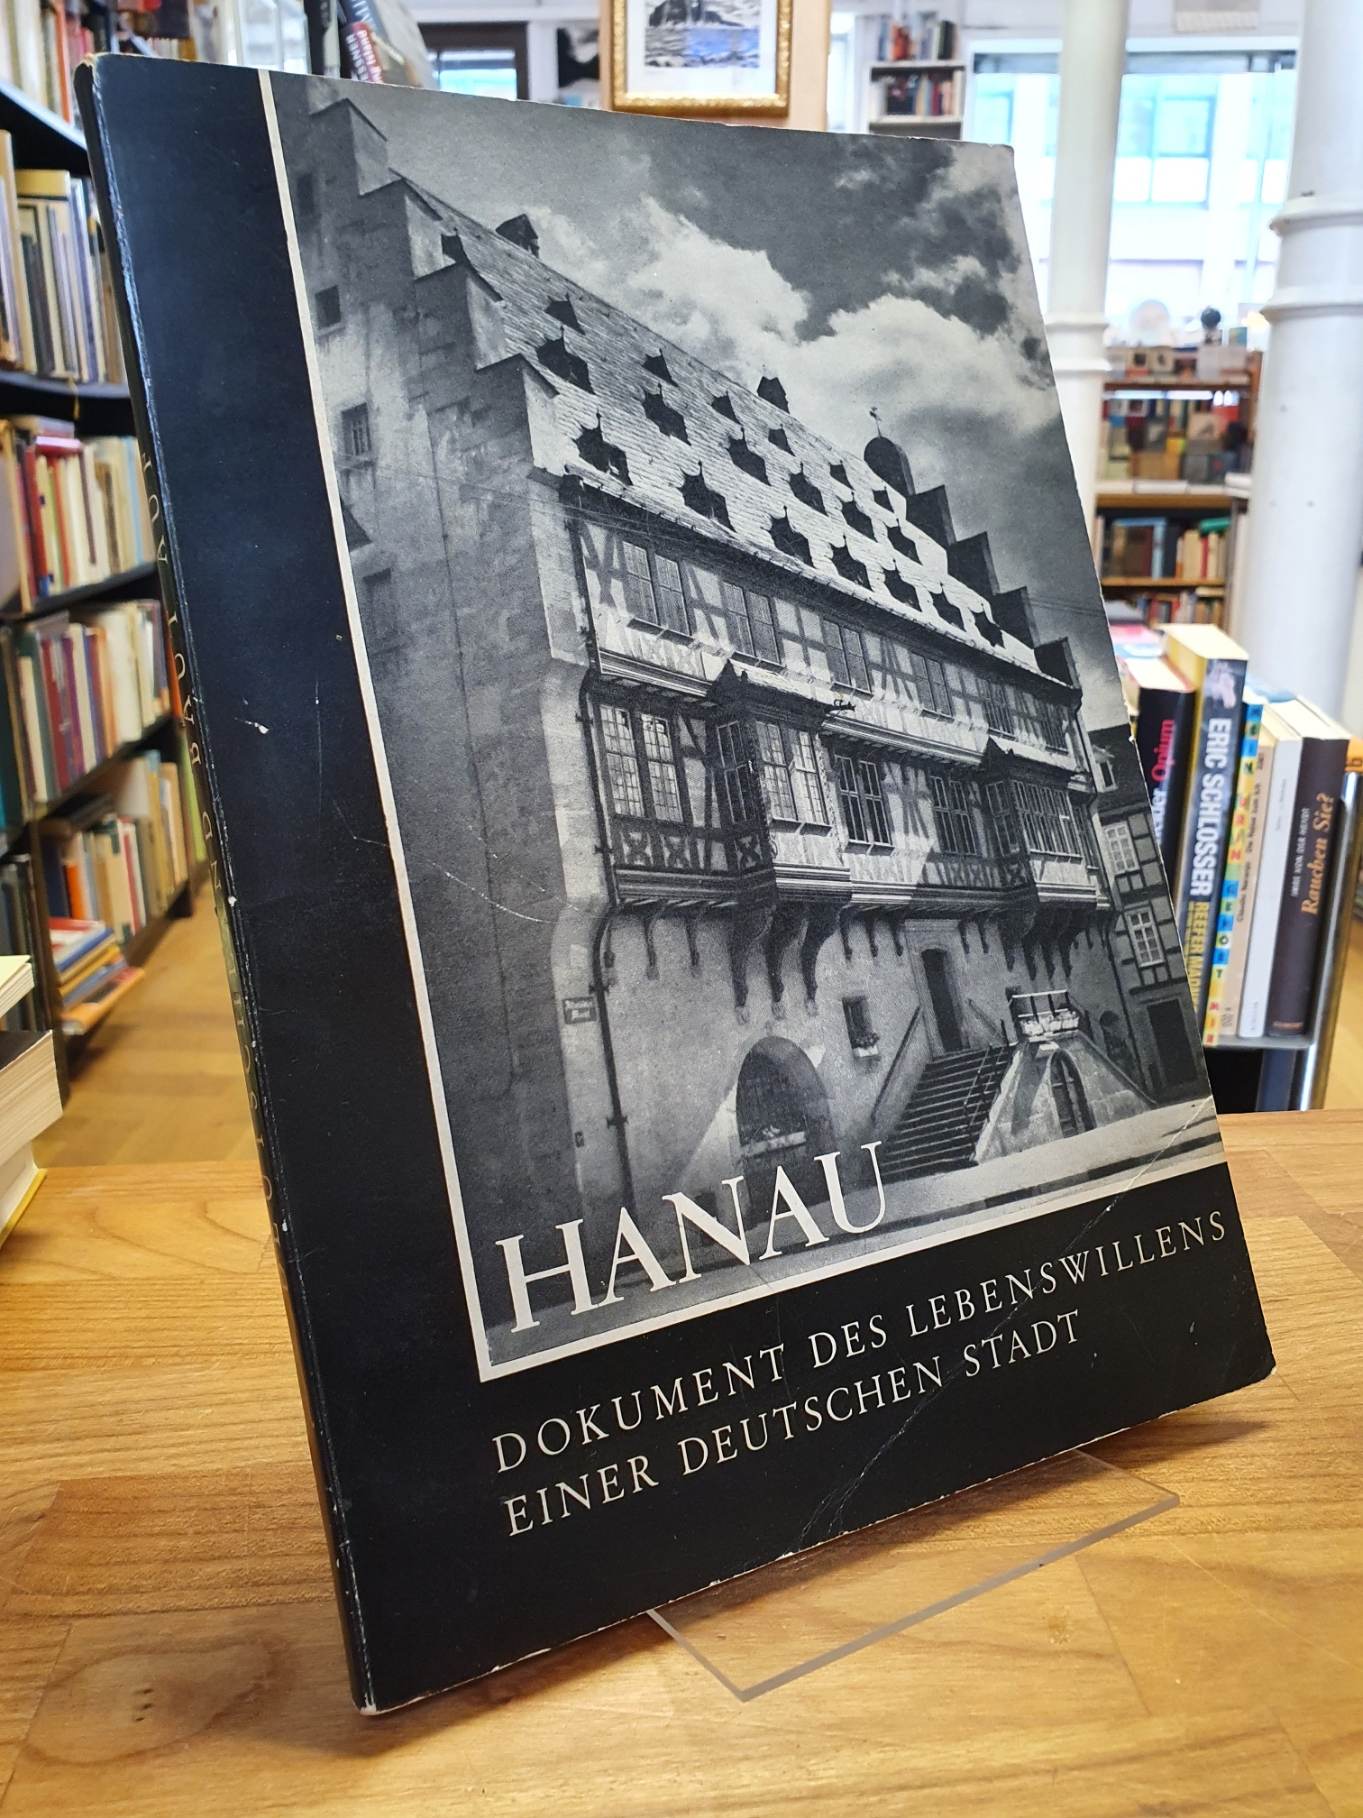 Magistrat der Stadt Hanau /  Nagel, Hanau – Dokument des Lebenswillens einer deu